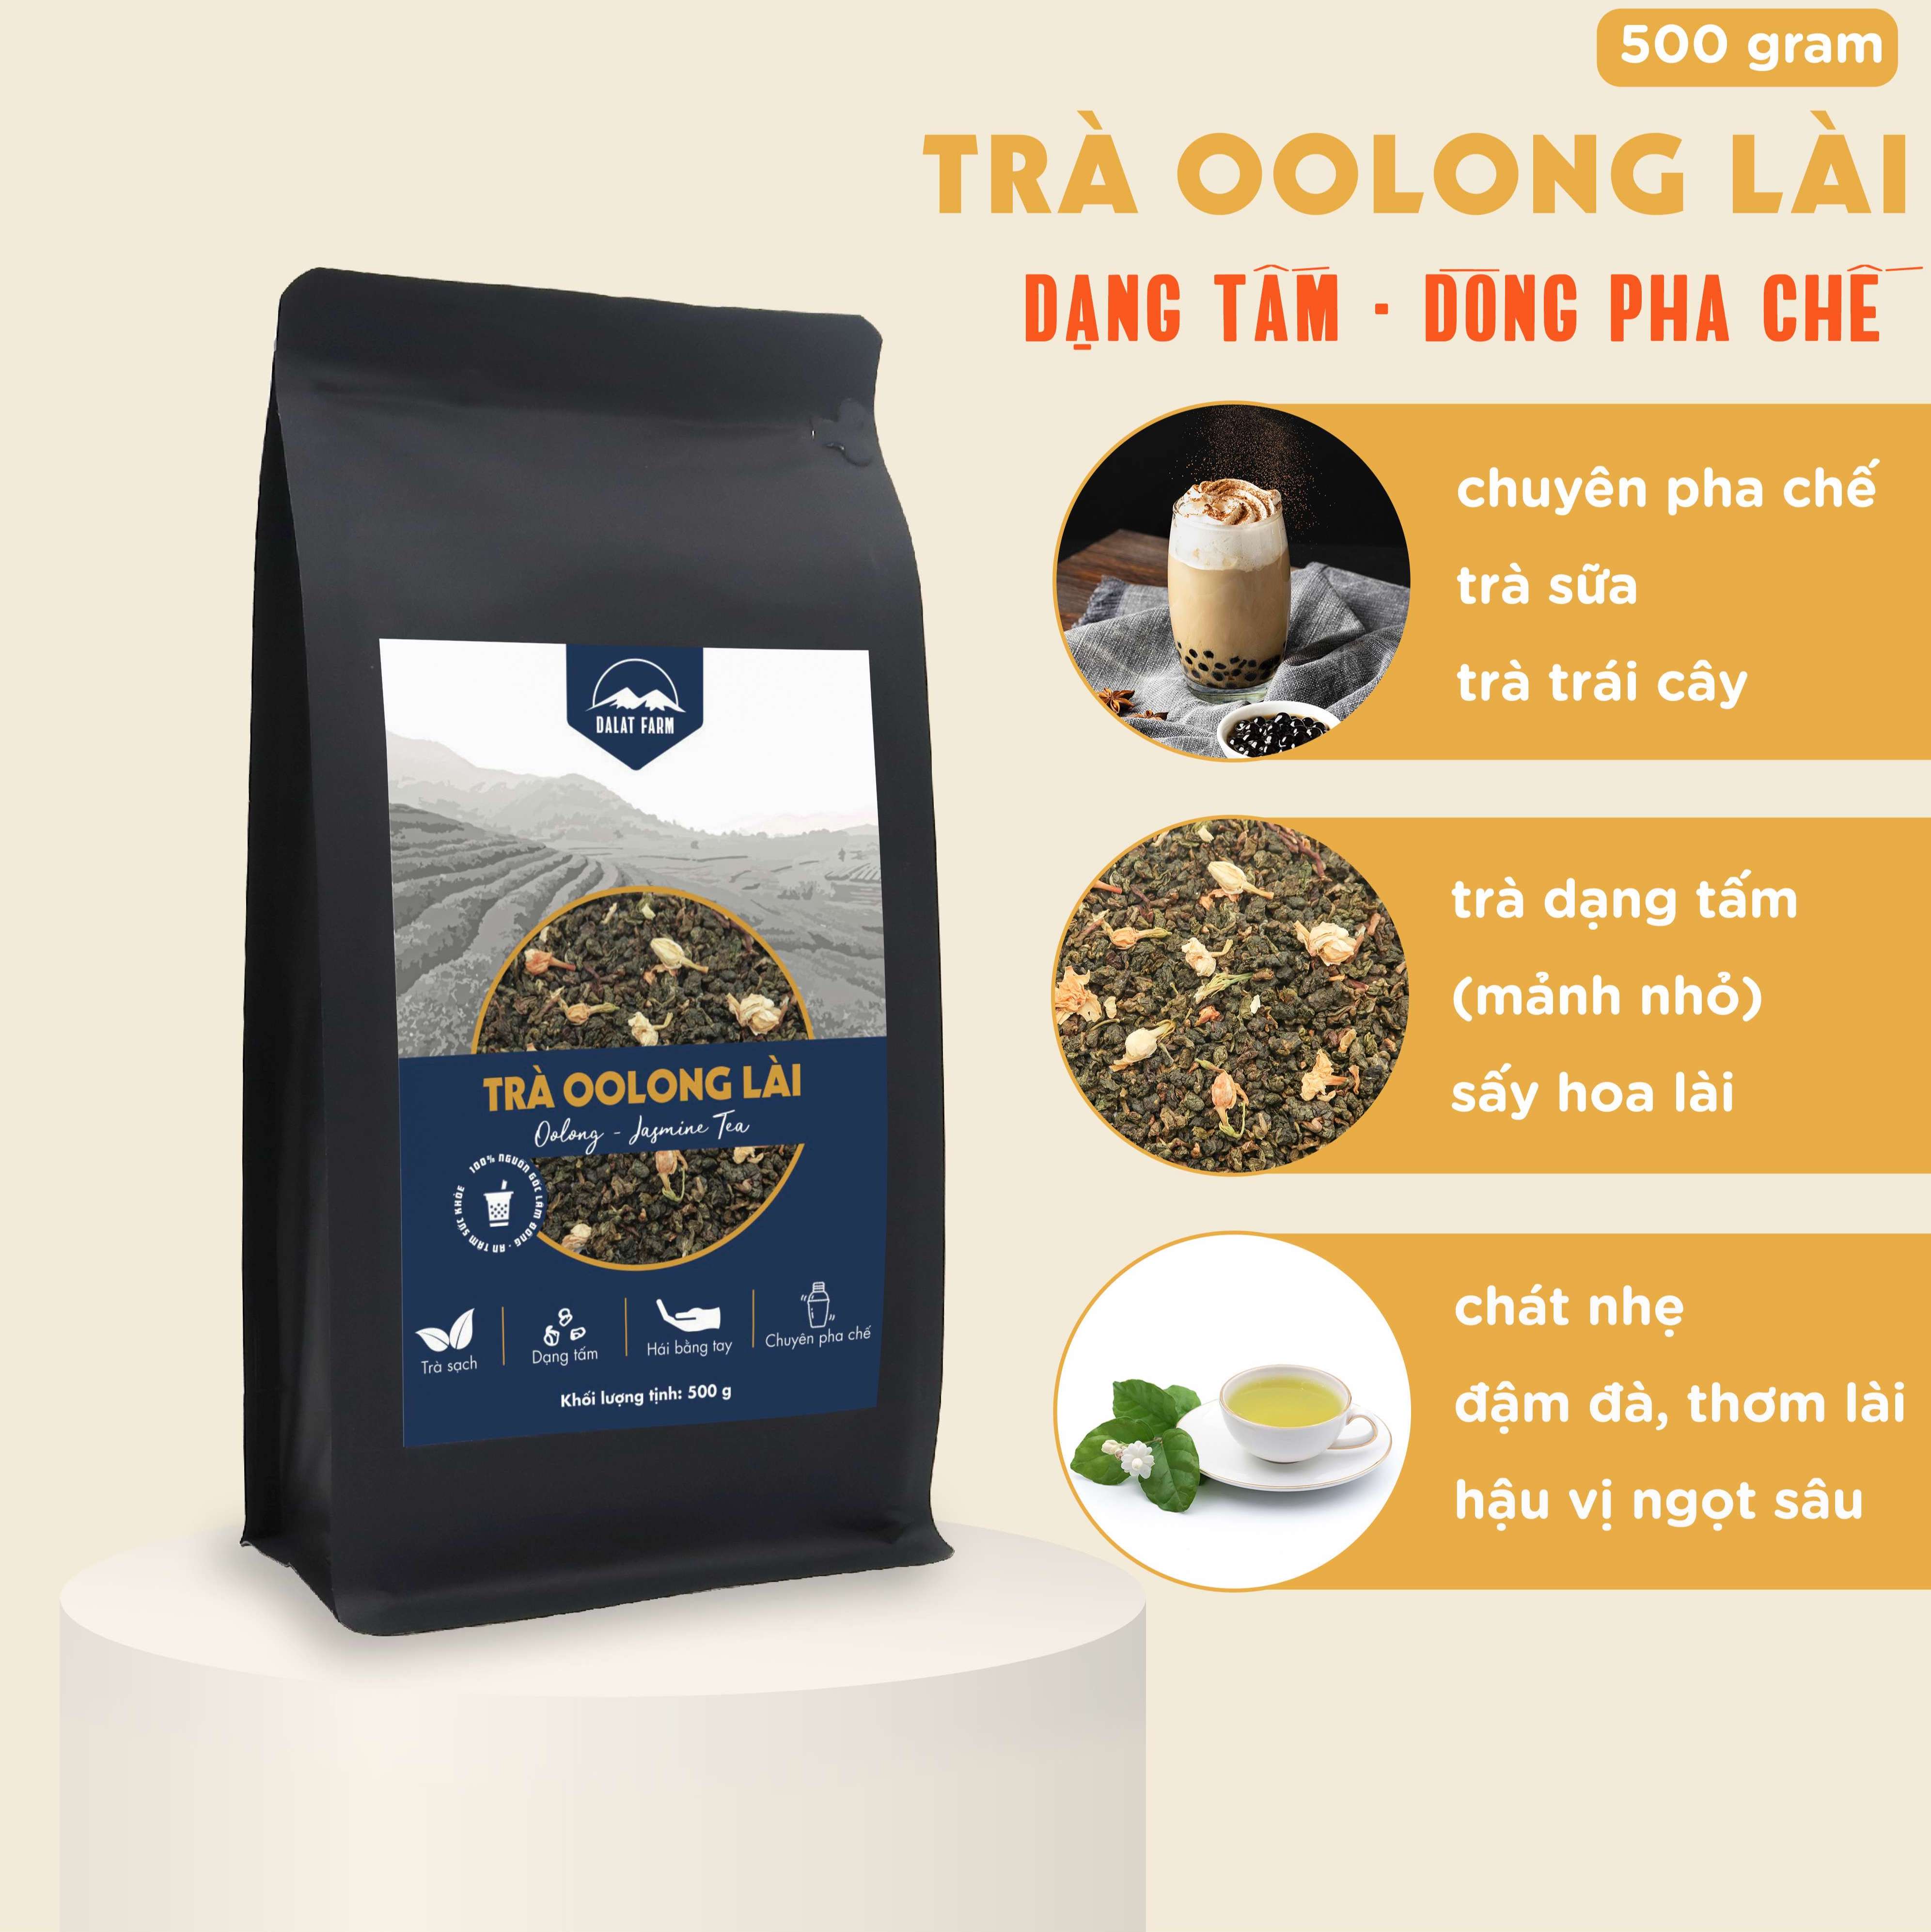 Trà Oolong Lài dạng tấm - Túi 500 g - Dòng Pha Chế Chuyên Dụng